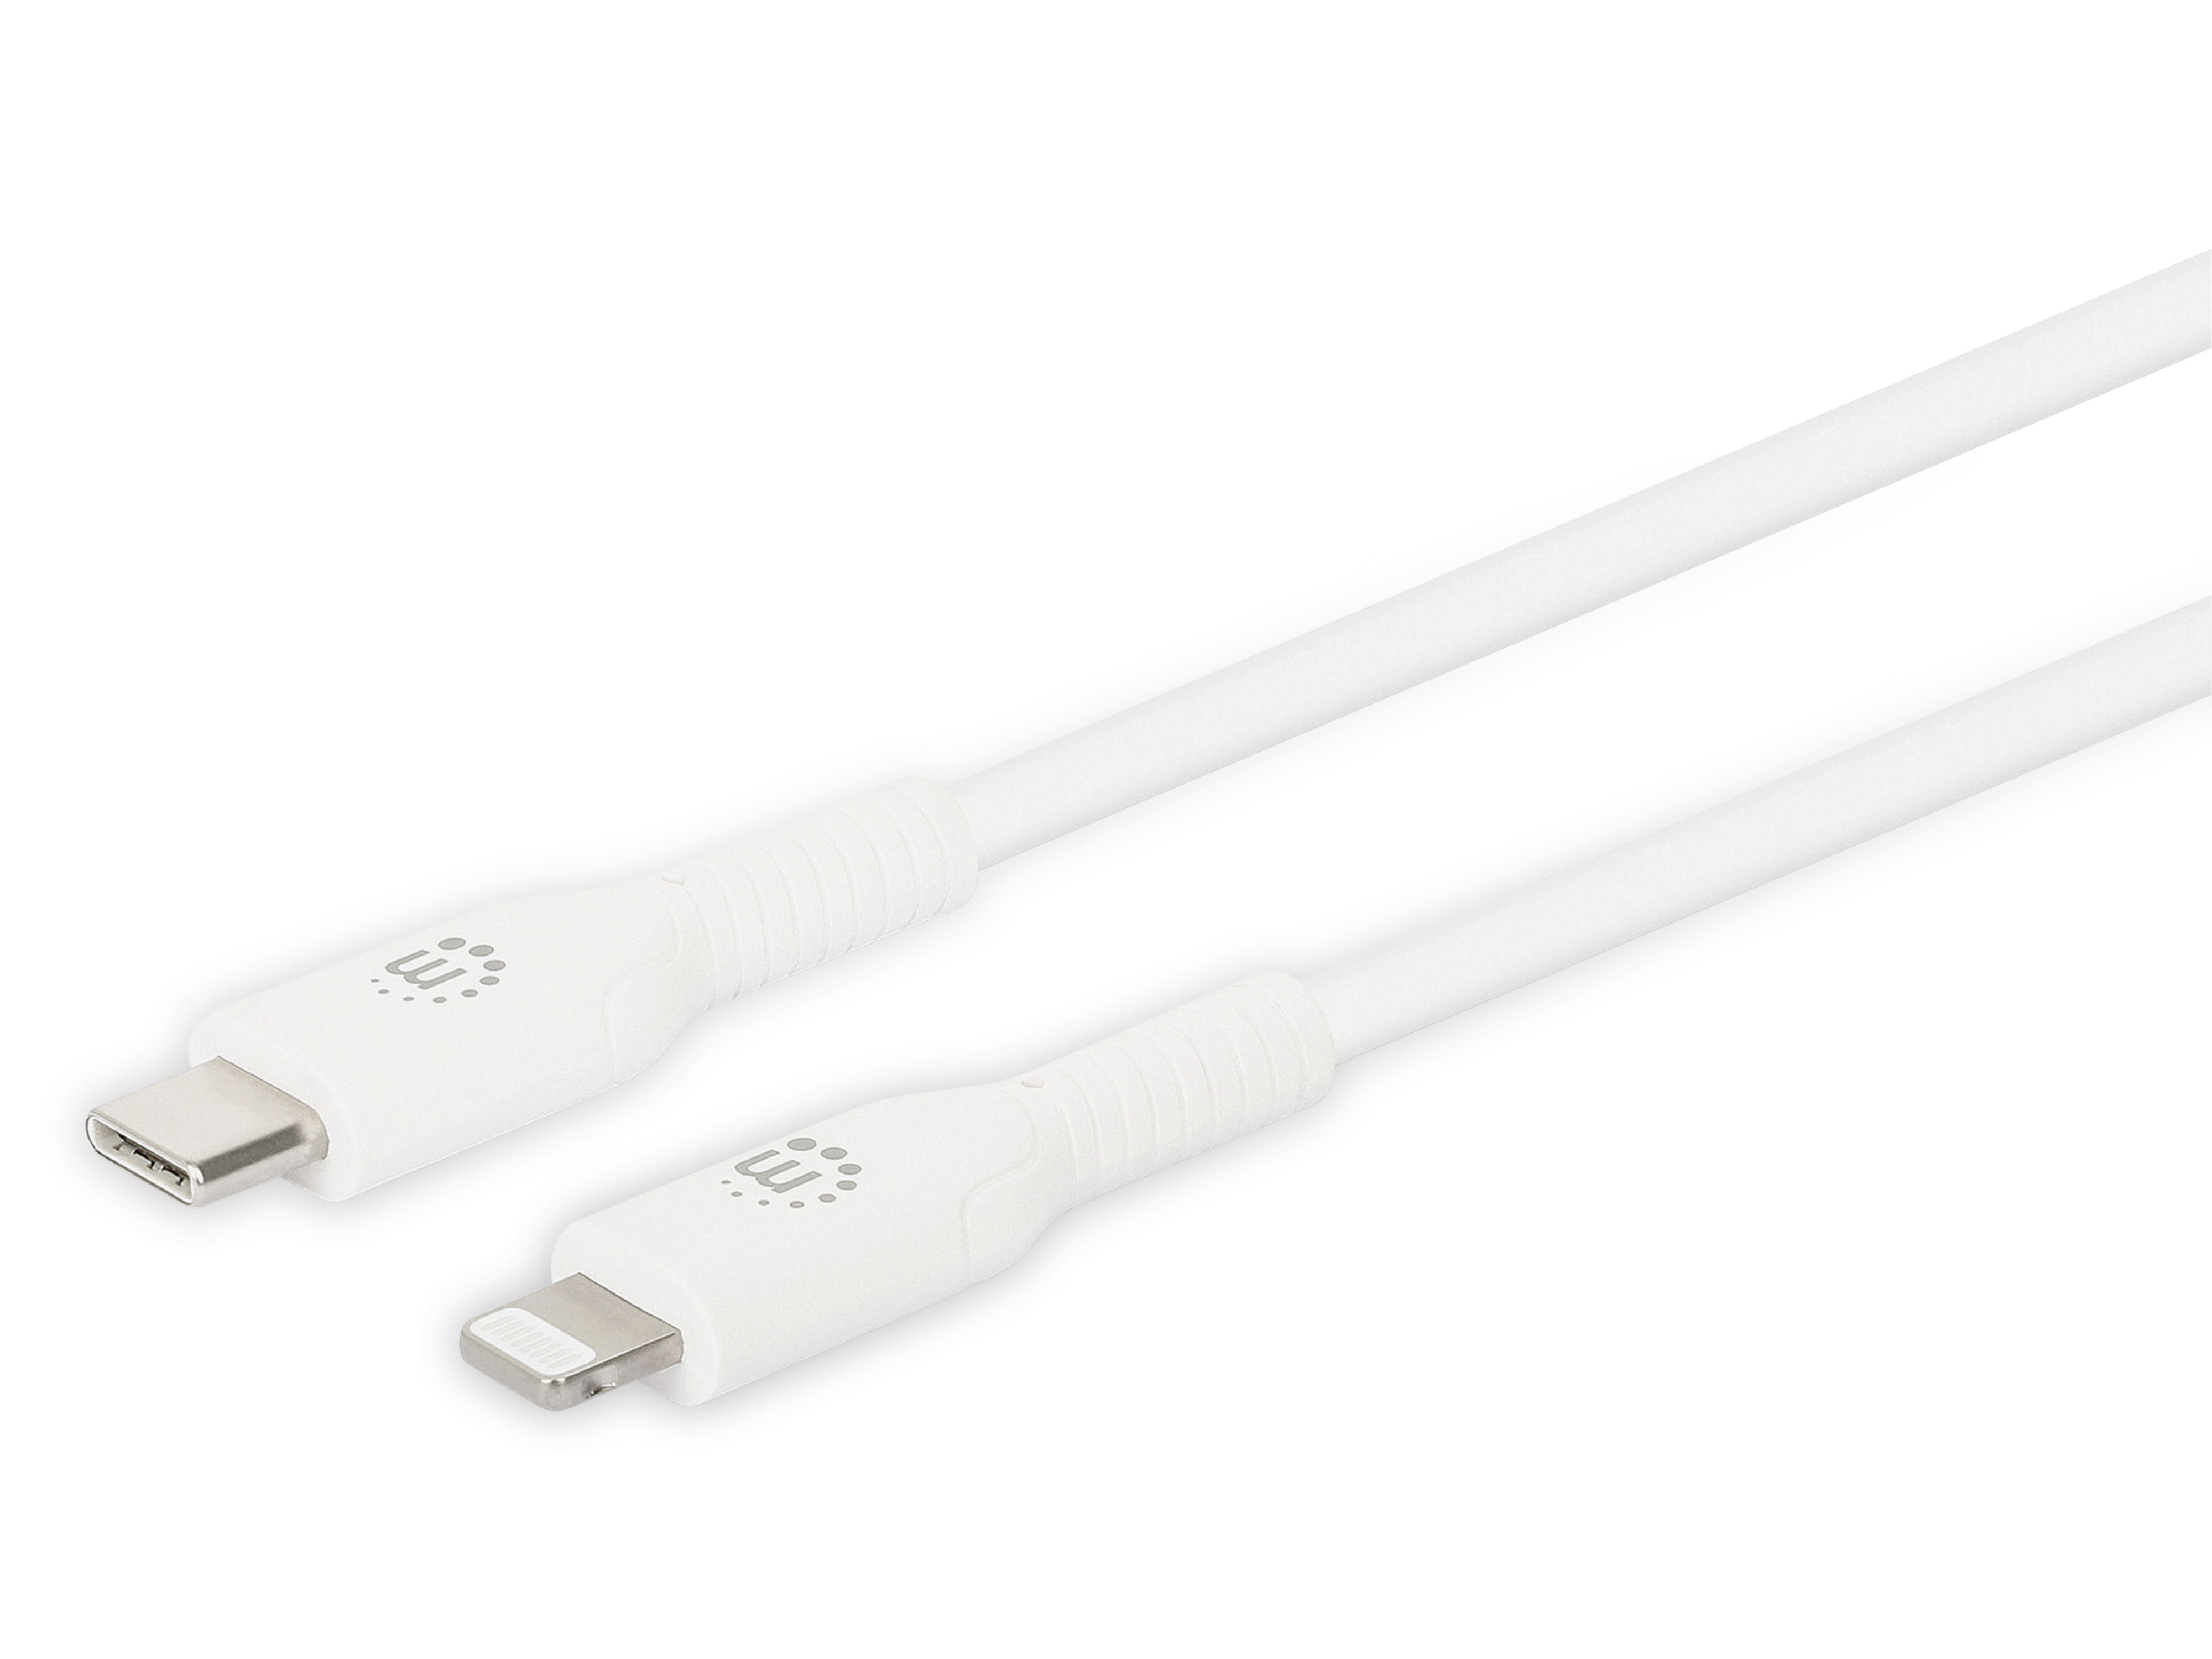 MANHATTAN USB-Daten/Ladekabel, 0,5 m, weiß